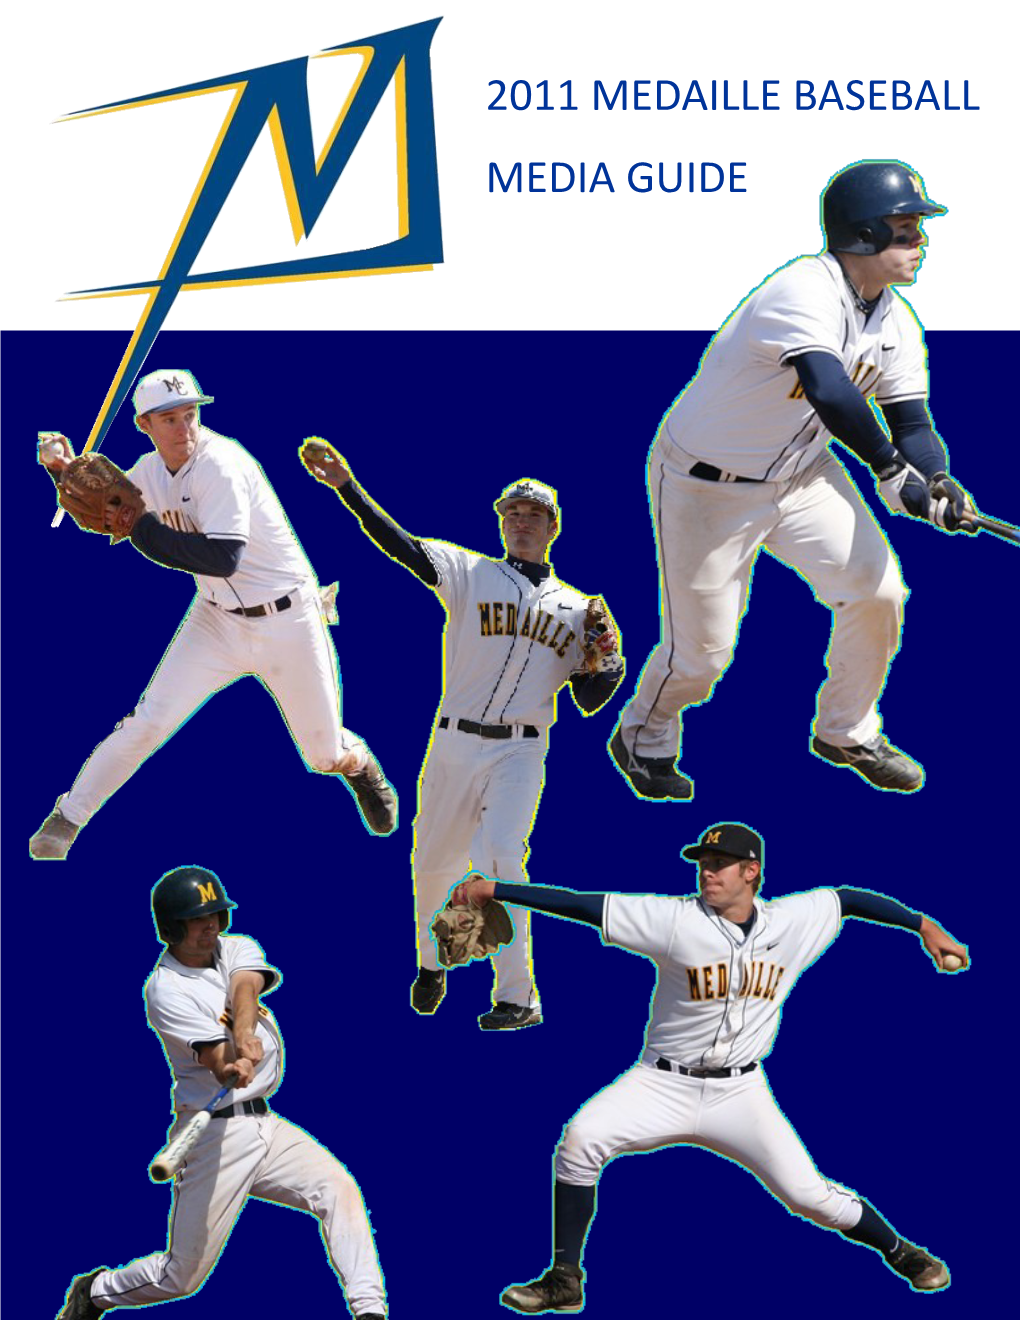 2011 Medaille Baseball Media Guide